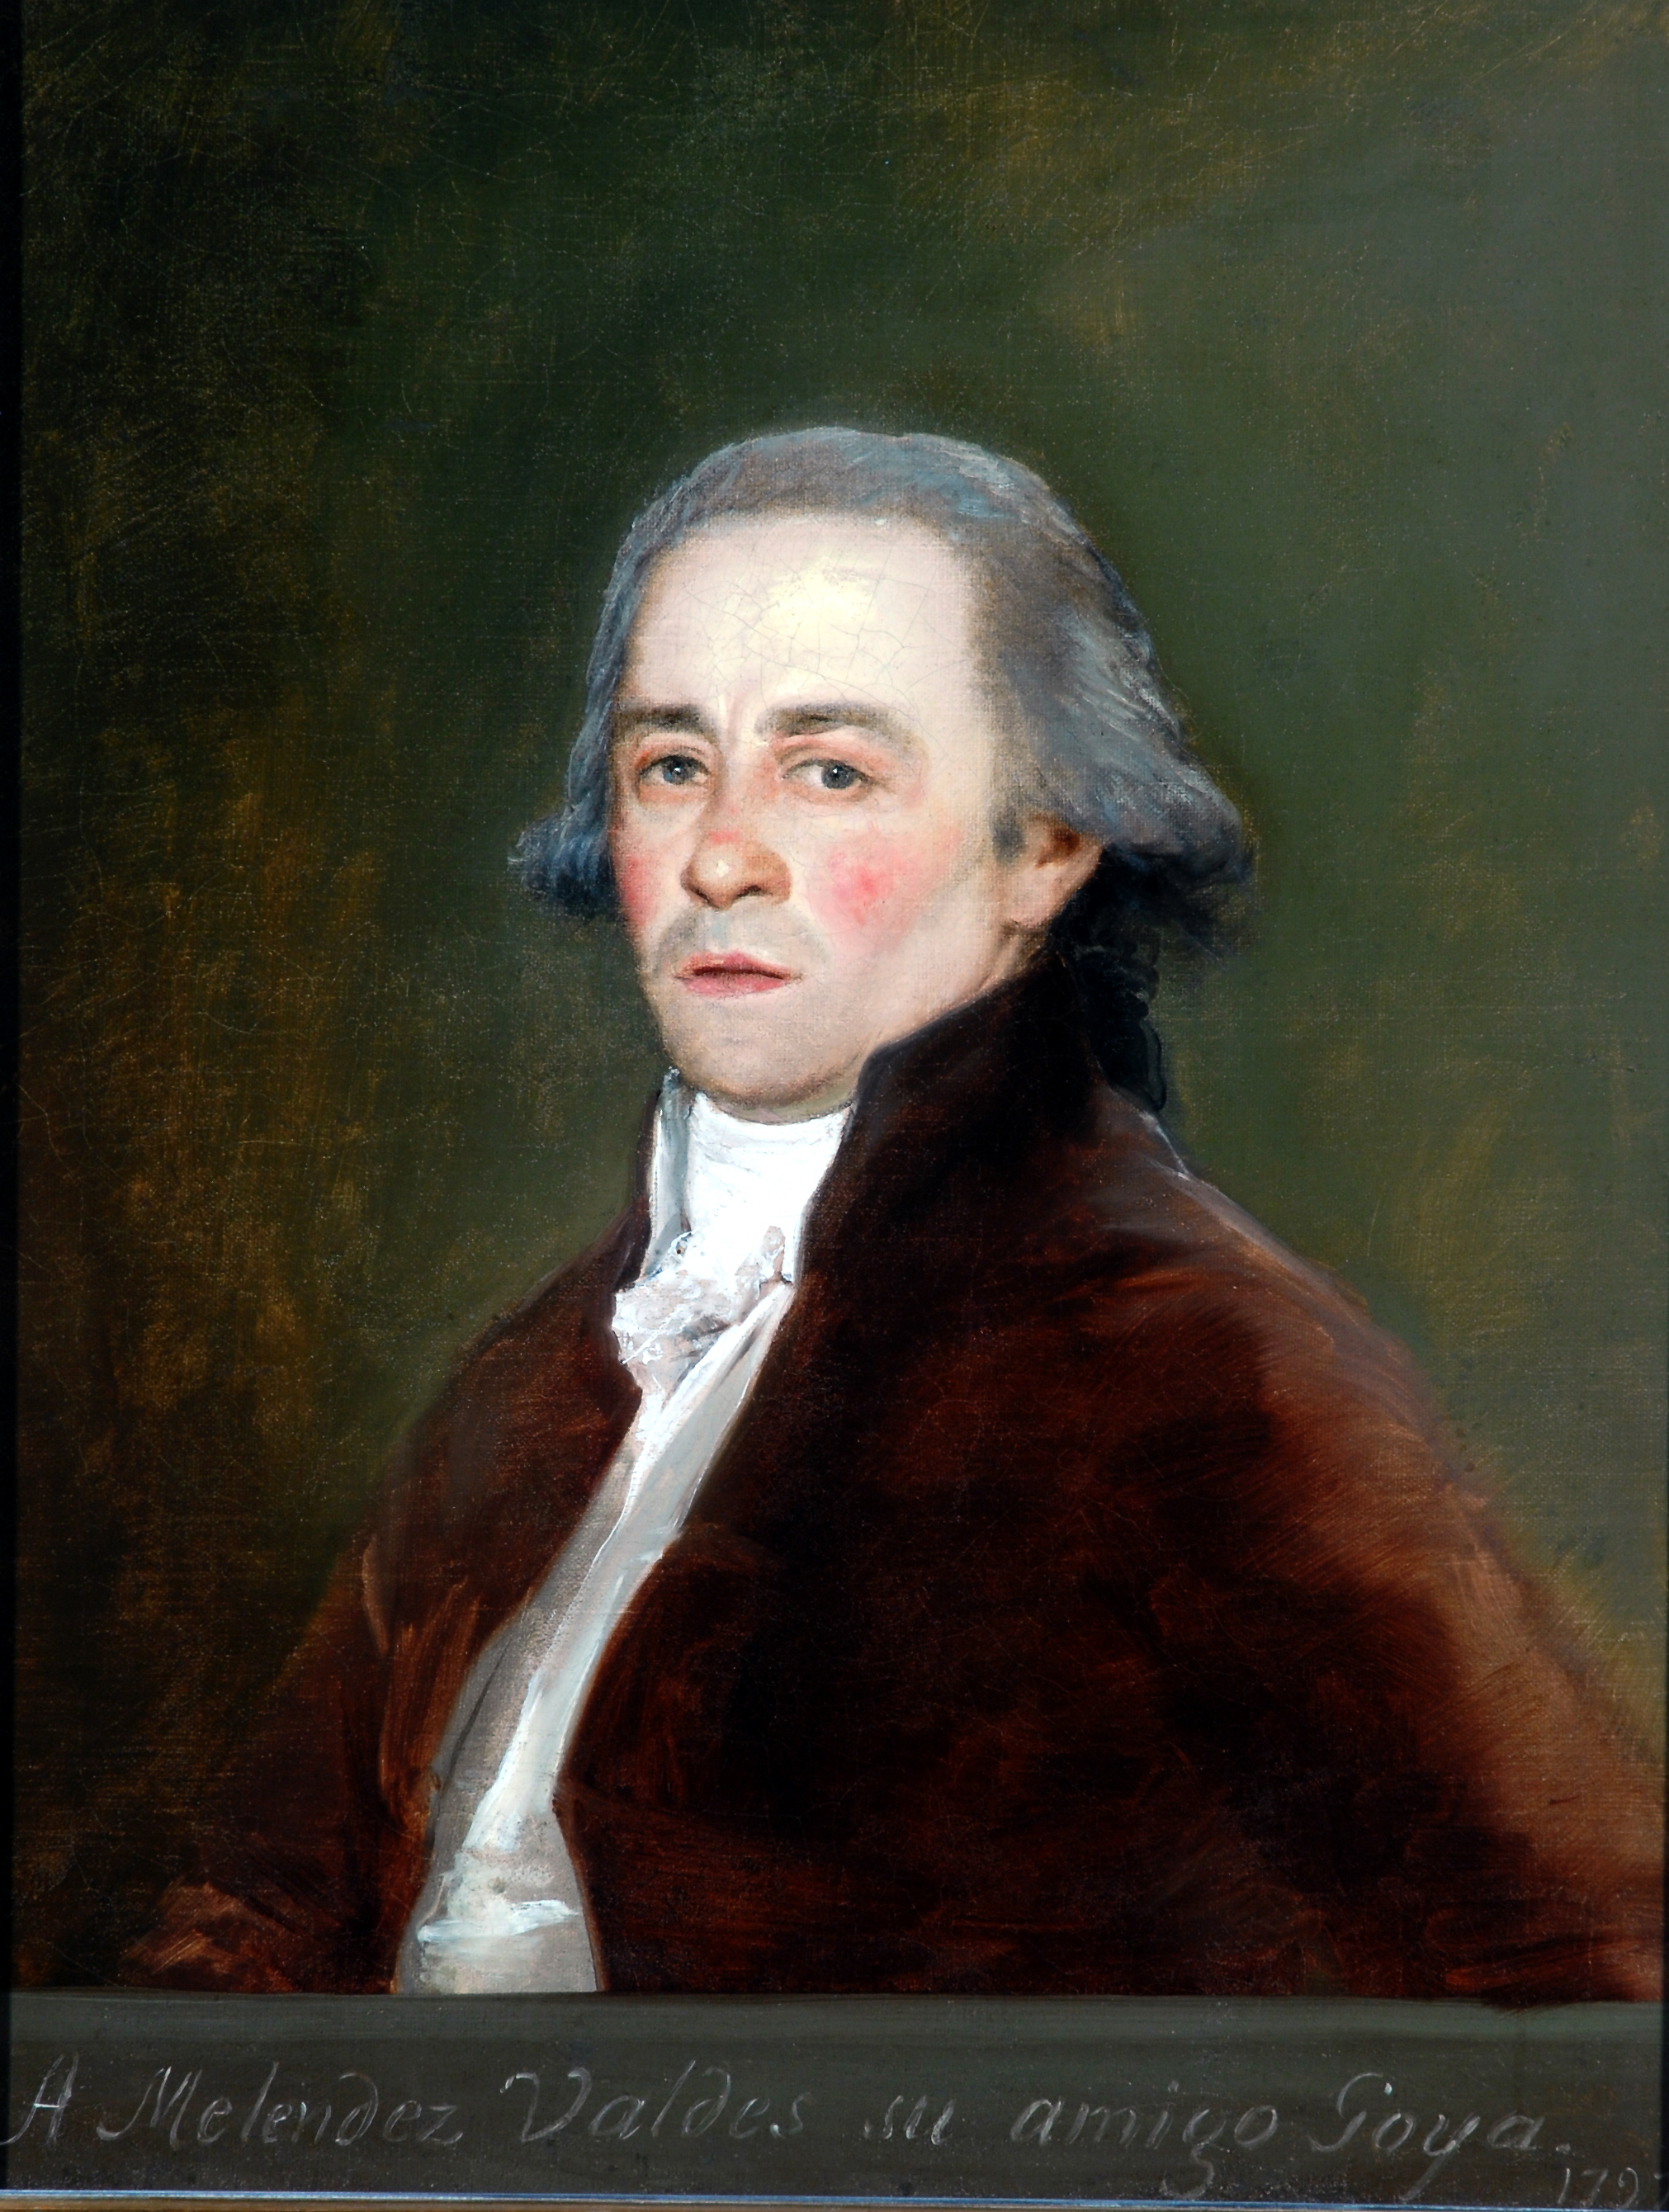 Juan Antonio Meléndez Valdés by Francisco Goya - 1797 - 73.3 x 57.1 cm Bowes Museum